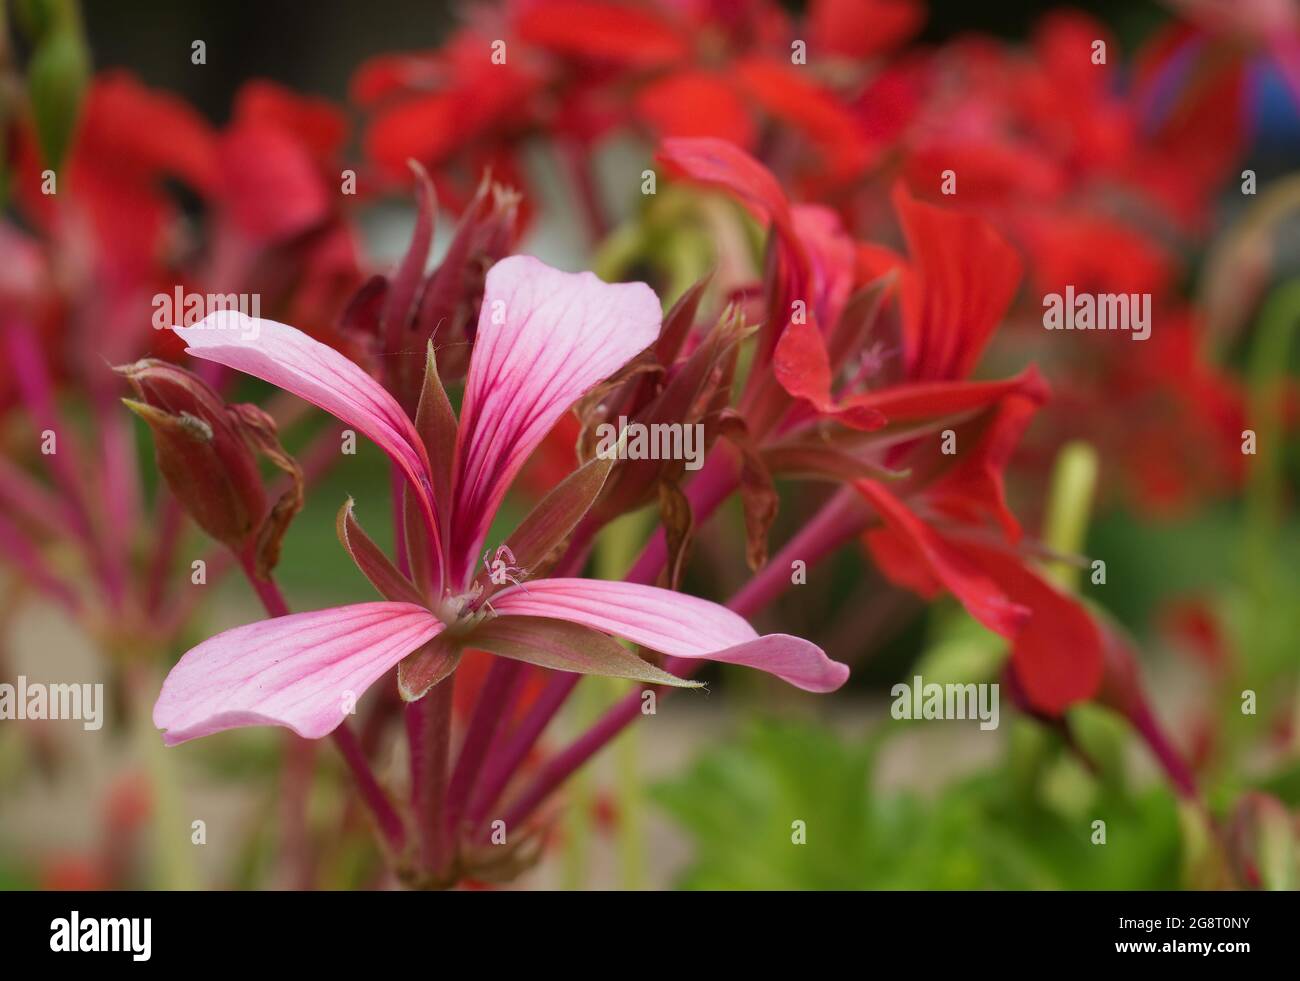 Géranium de lierre rose et rouge en fleurs Pelargonium peltatum dans un jardin. Également connu sous le nom de pélargonium à feuilles de lierre ou géranium en cascade. Banque D'Images